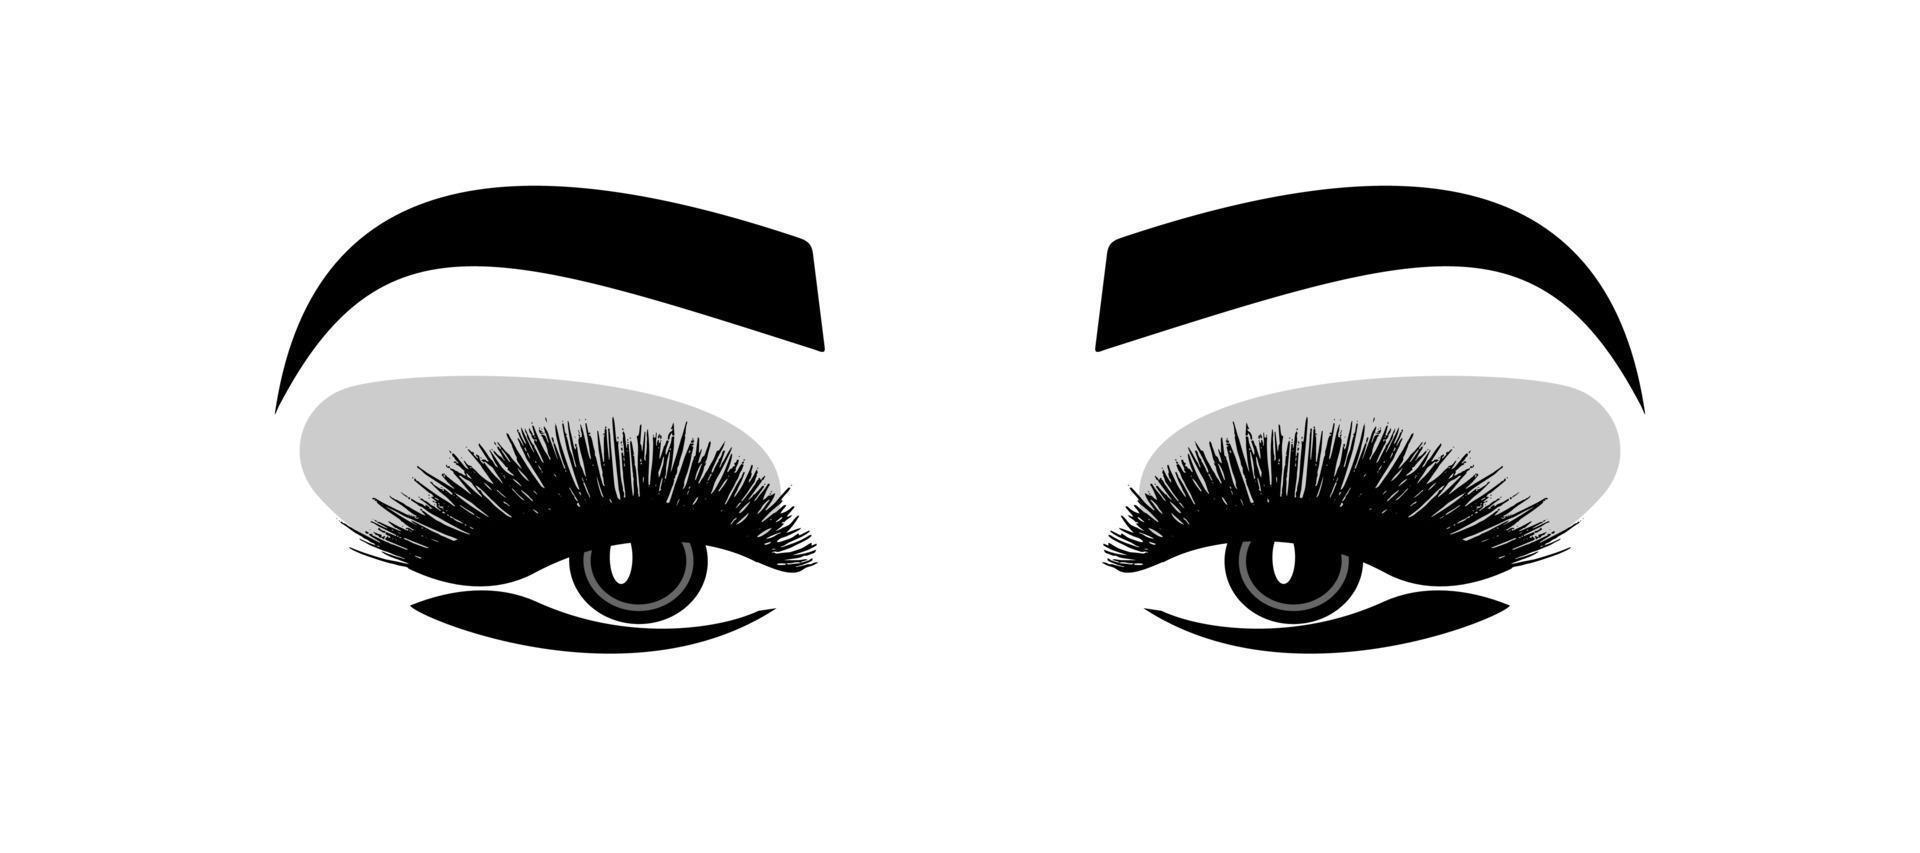 maquiagem dos olhos. cílios da sobrancelha - ilustração vetorial em estilo simples. salão de beleza. visão vetor